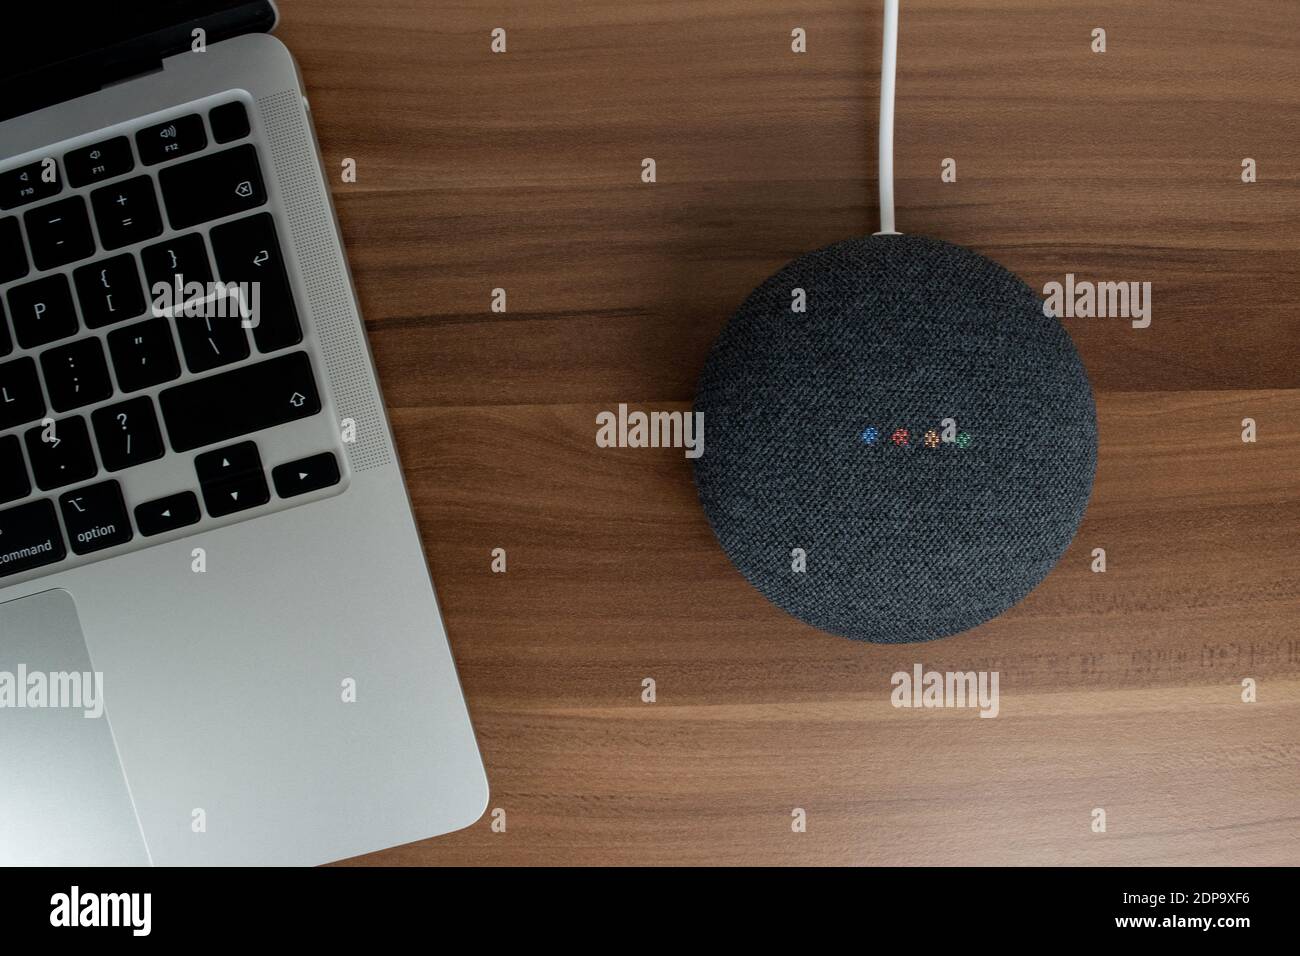 Londra, Regno Unito - 19 dicembre 2020: Altoparlante intelligente antracite Google Nest Home Mini con Google Assistant integrato accanto a un computer portatile su una scrivania. Foto Stock